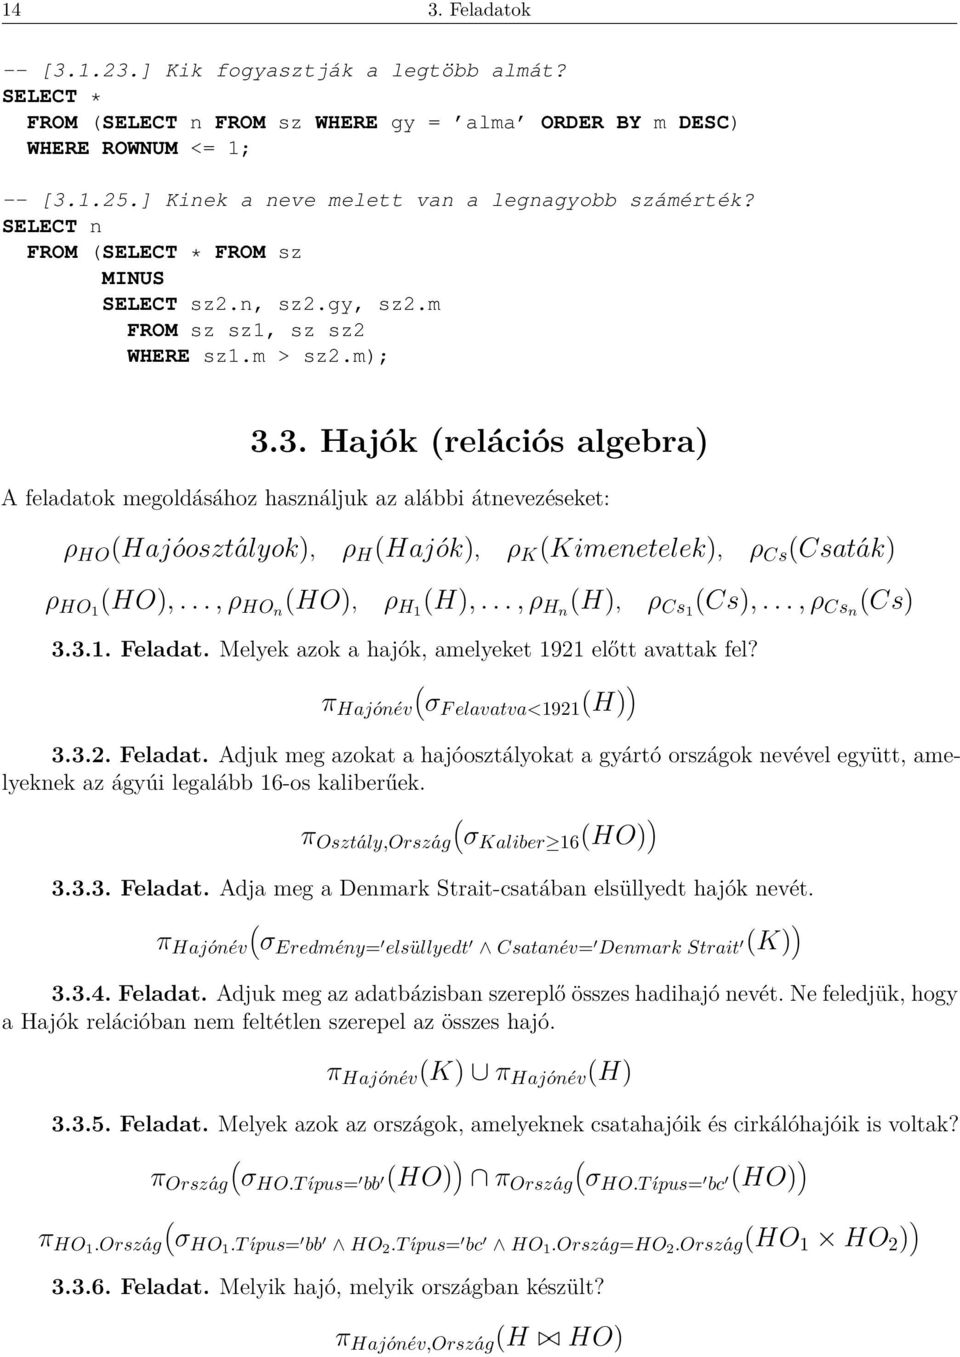 3. Hajók relációs algebra) A feladatok megoldásához használjuk az alábbi átnevezéseket: ρ HO Hajóosztályok), ρ H Hajók), ρ K Kimenetelek), ρ Cs Csaták) ρ HO1 HO),..., ρ HOn HO), ρ H1 H),.